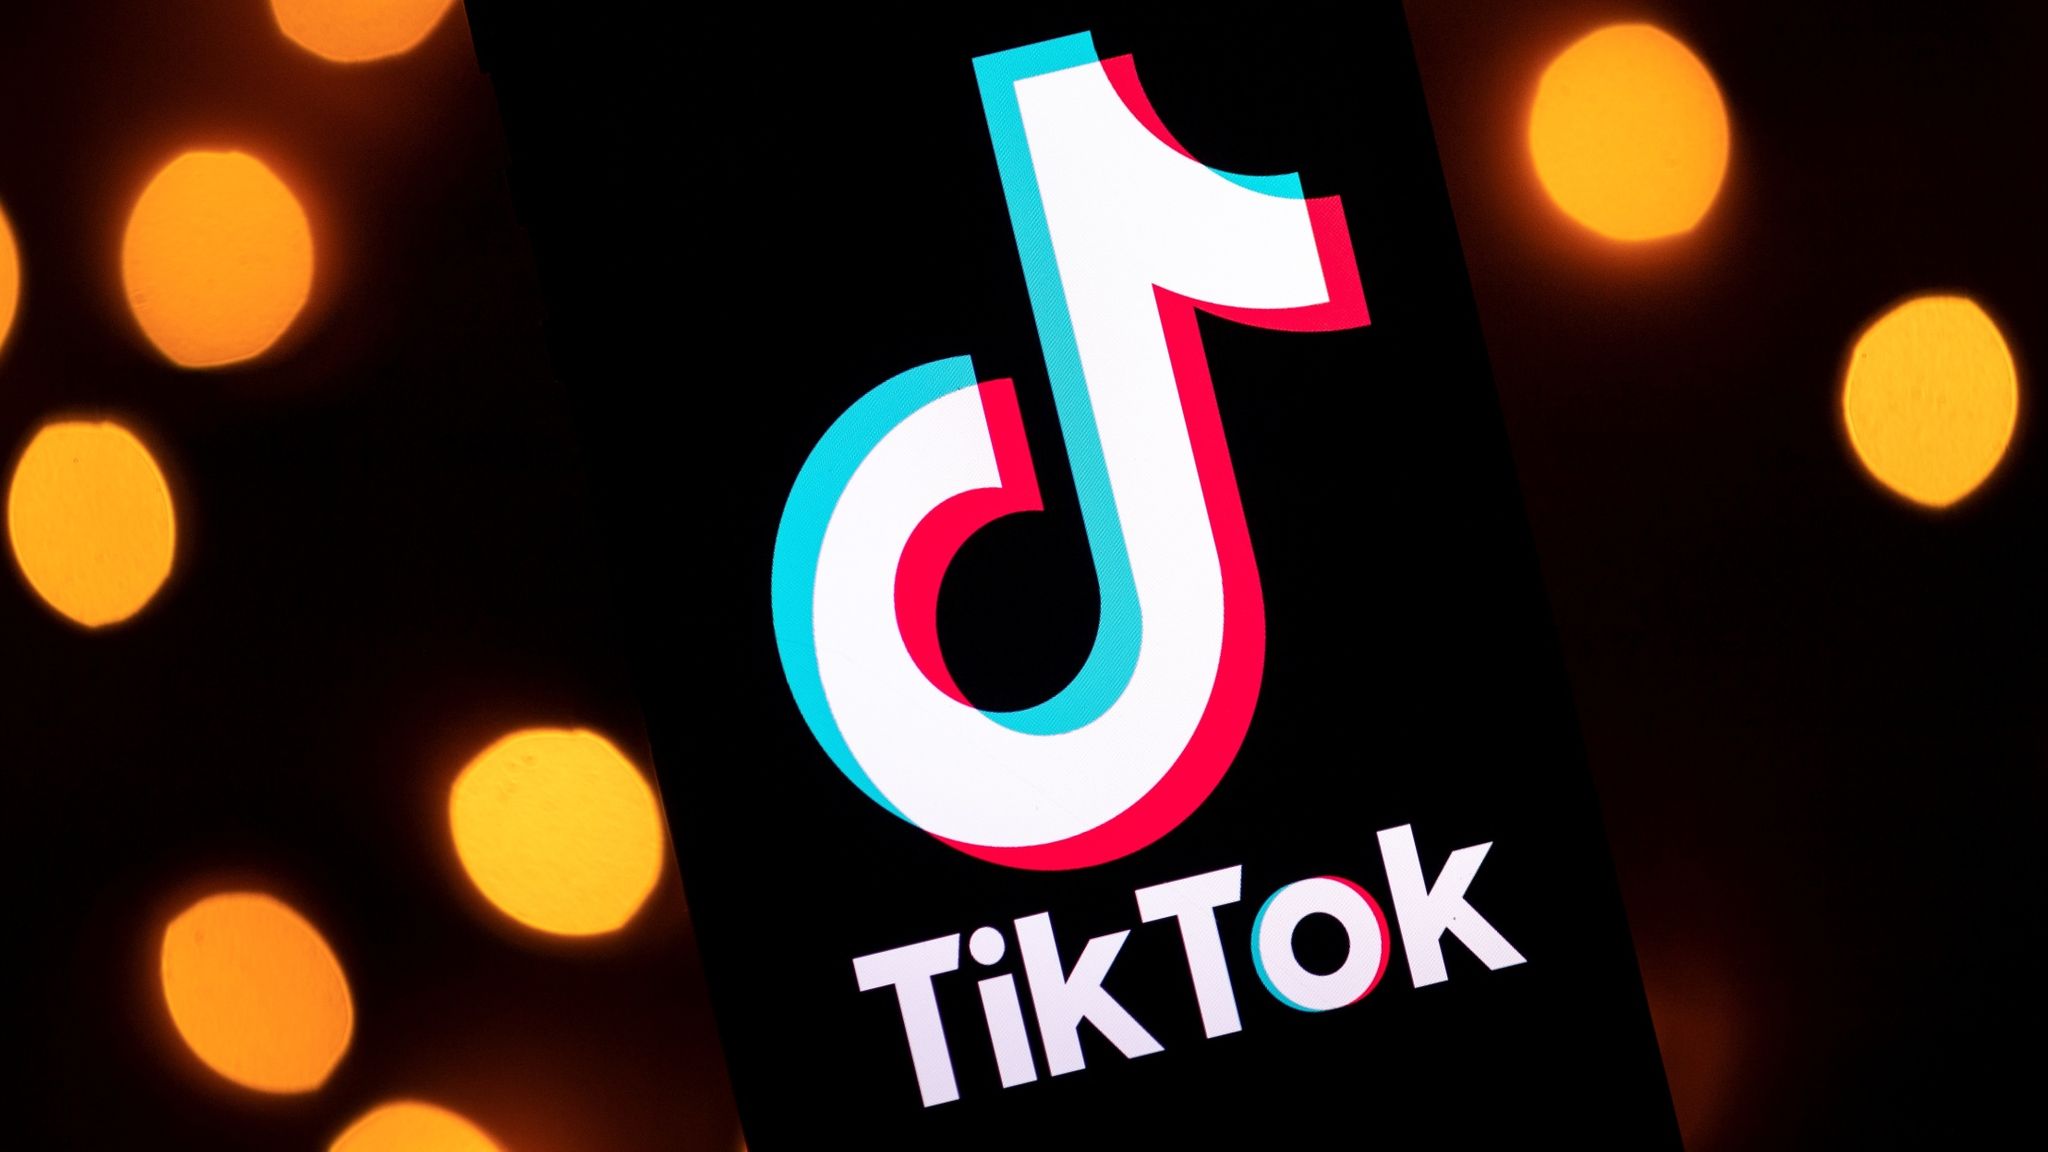 Good news for Tik Tok users – Negotiations between PTA and Tik Tok